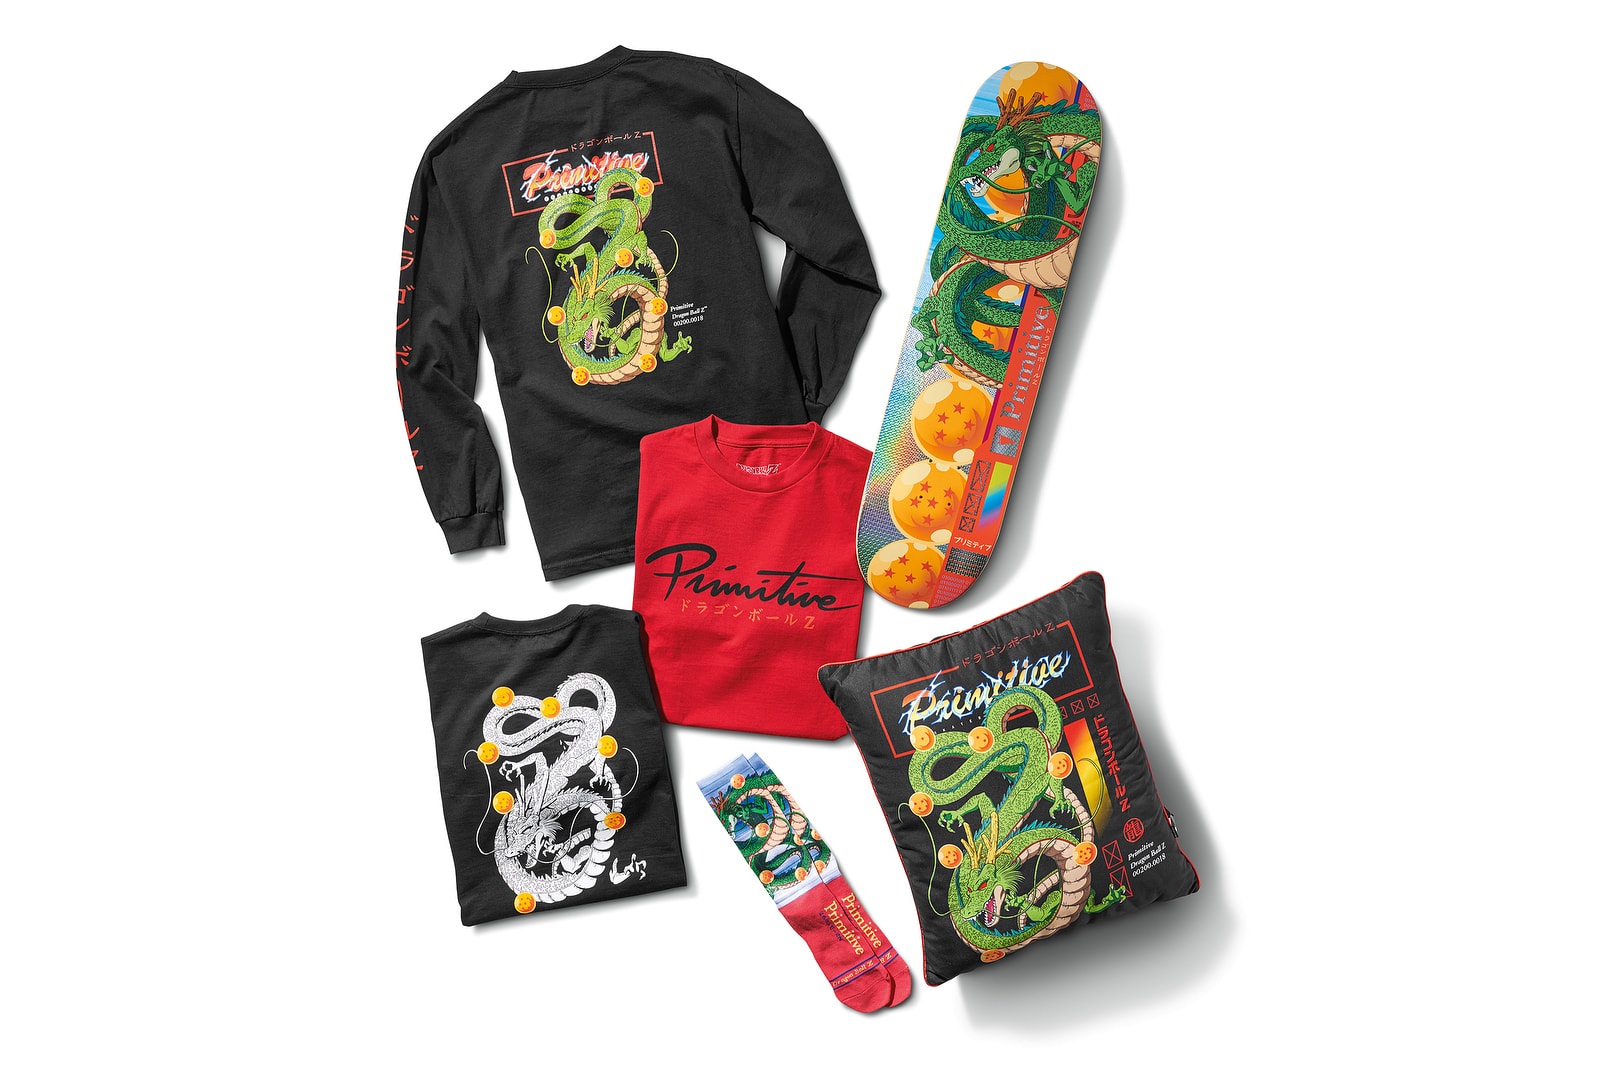 Primitive Skateboarding Dragon Ball Z Collection Official Merch merchandise collection collab Shenron